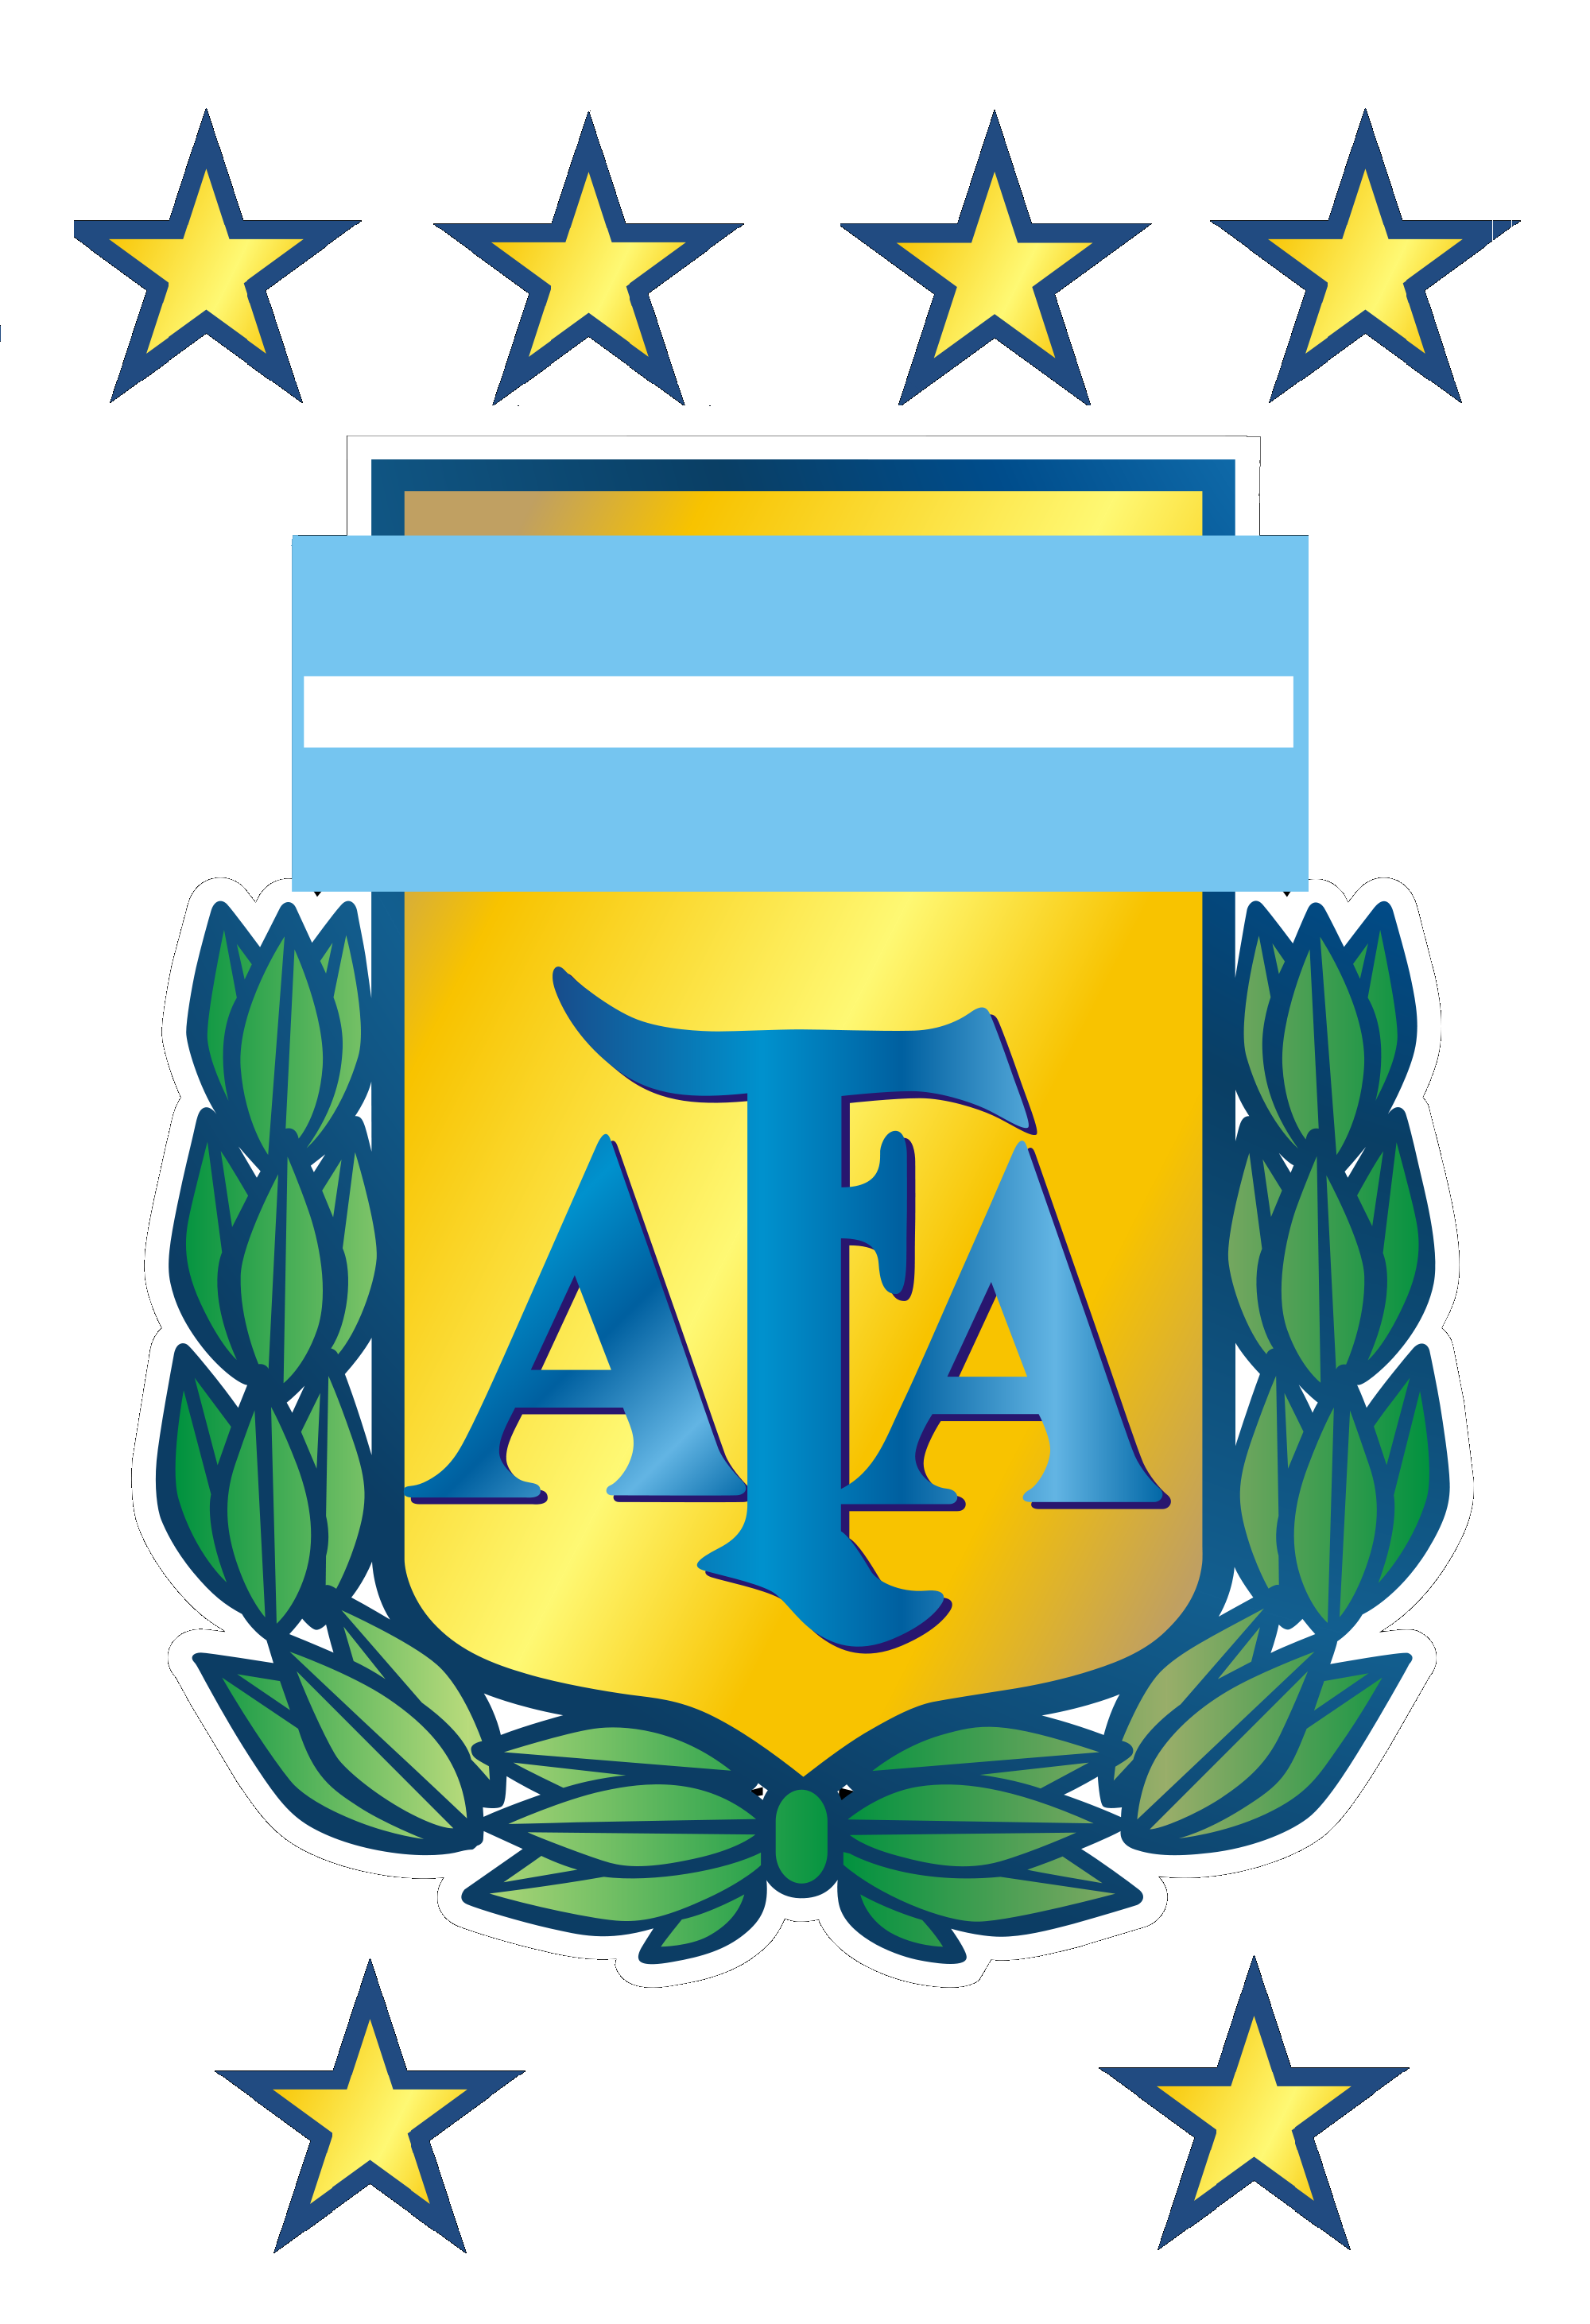 Logo of AFA Copa del Mundo Br